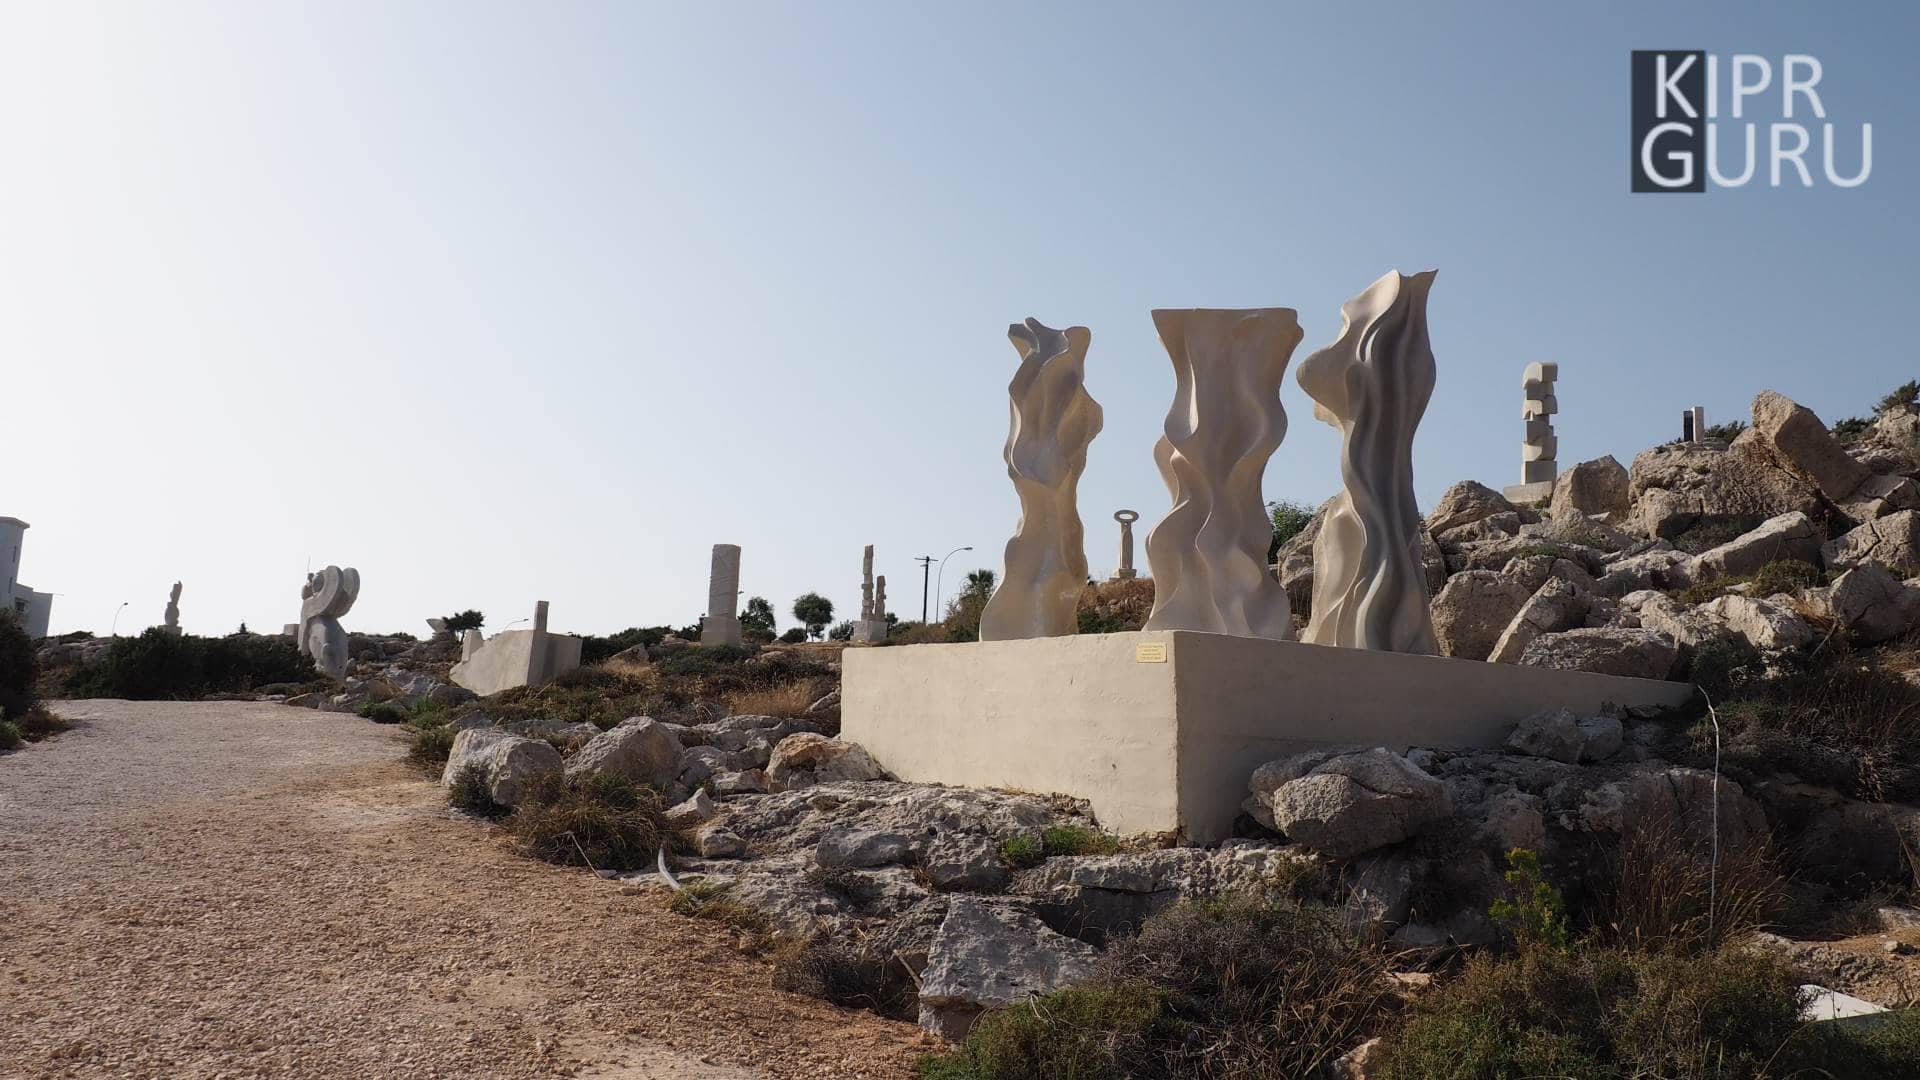 Айя Напа, международный парк скульптур (Кипр)